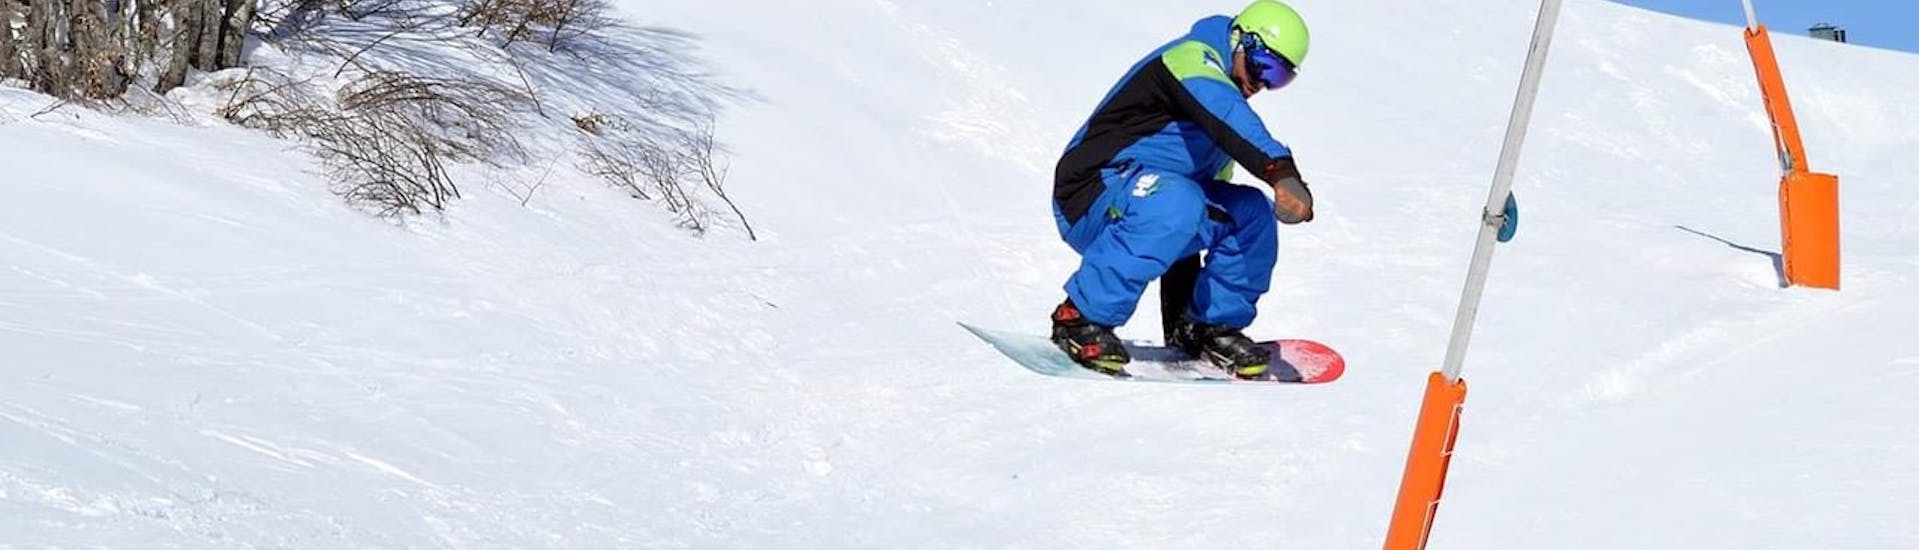 Snowboardlessen vanaf 16 jaar - beginners.